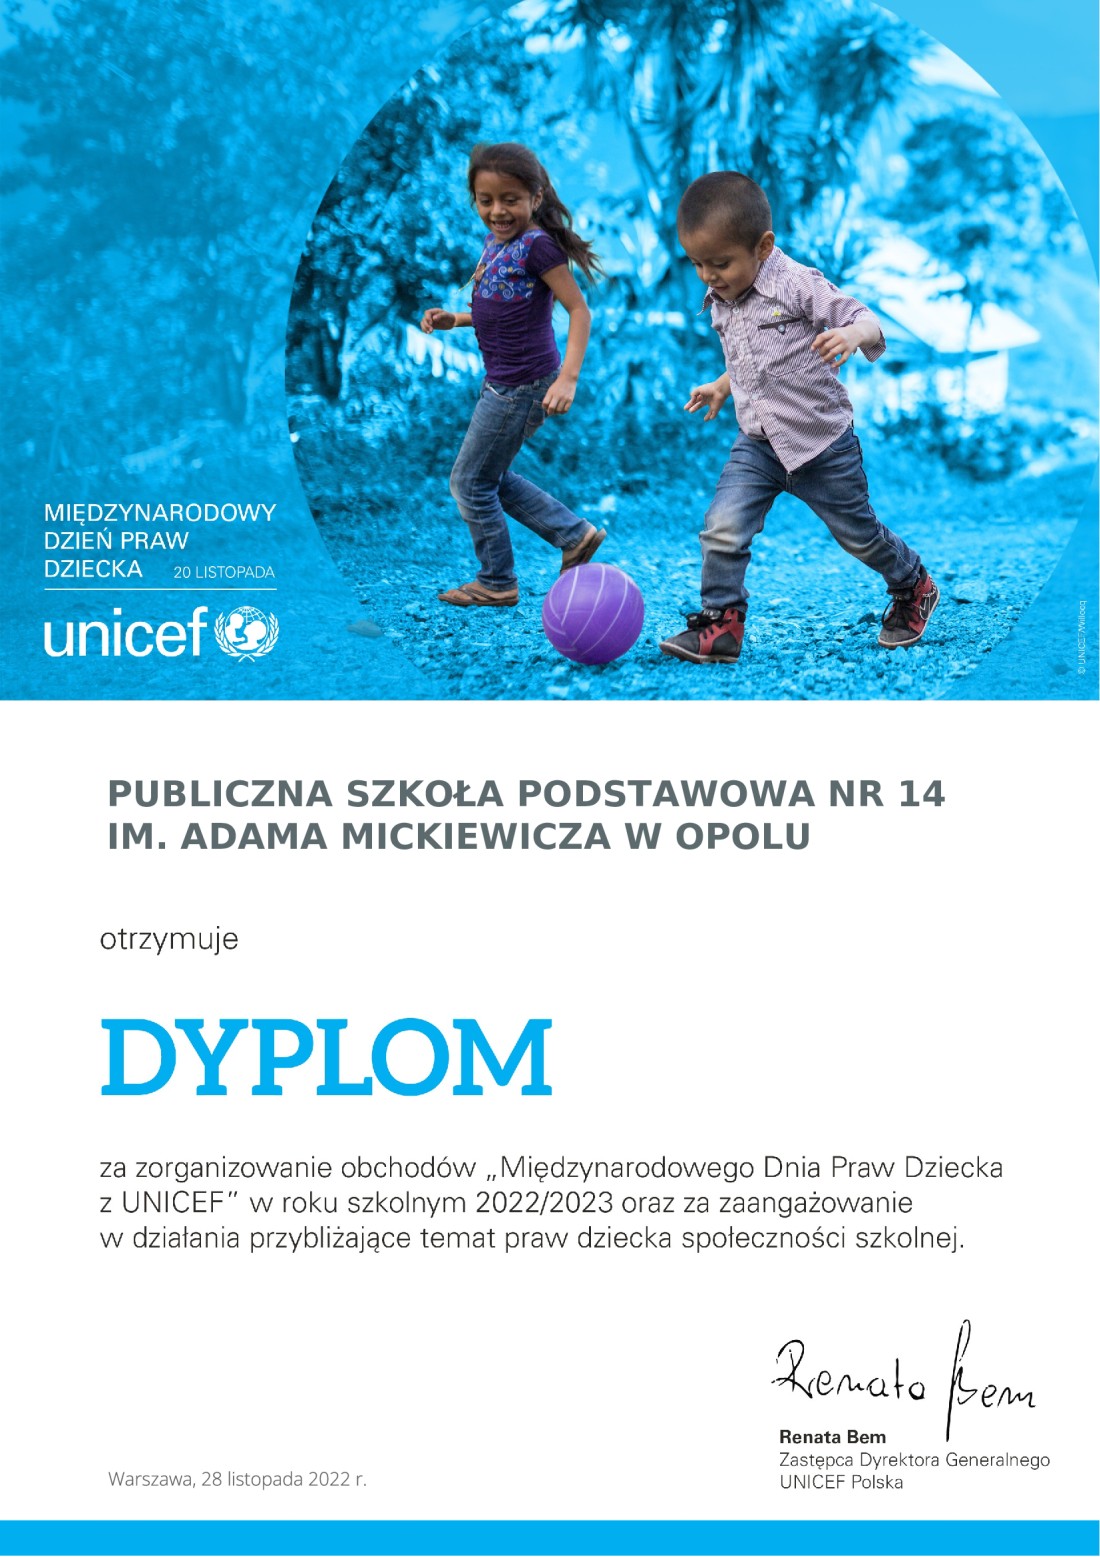 Dyplom - "Drużyna praw dziecka" z UNICEF - podsumowanie obchodów